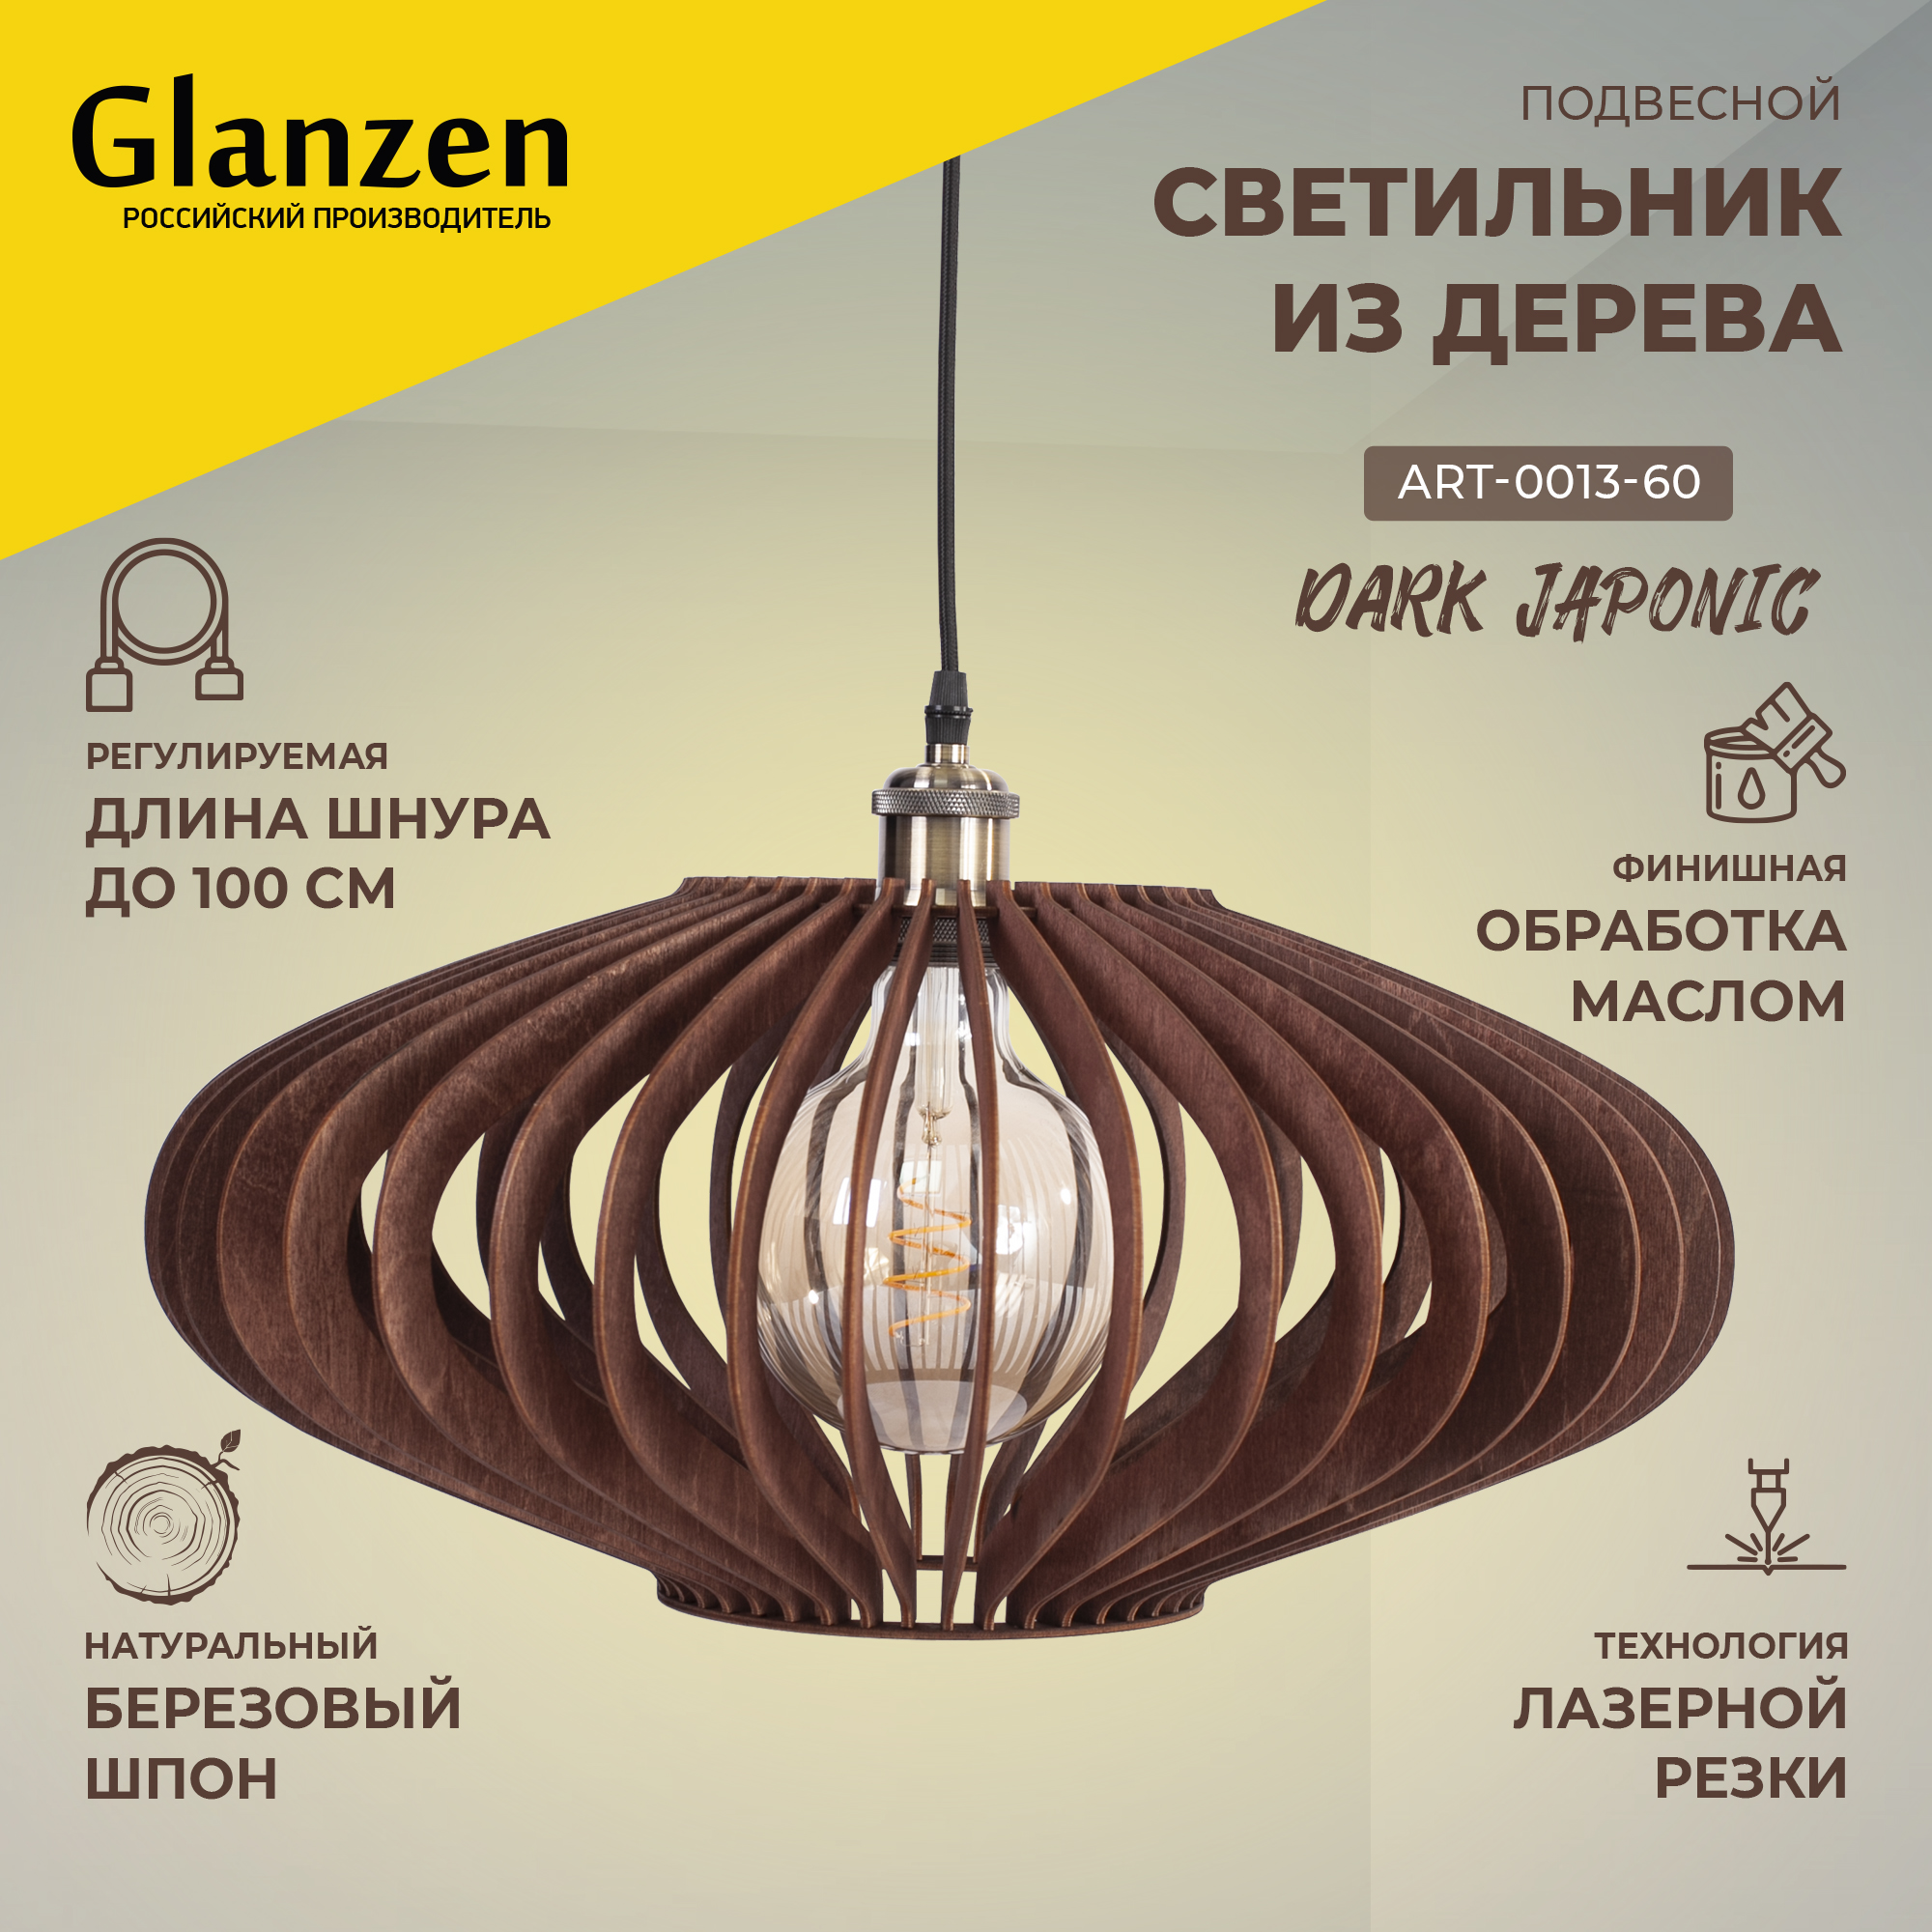 Подвесной светильник из дерева GLANZEN ART-0013-60-dark JAPONIC